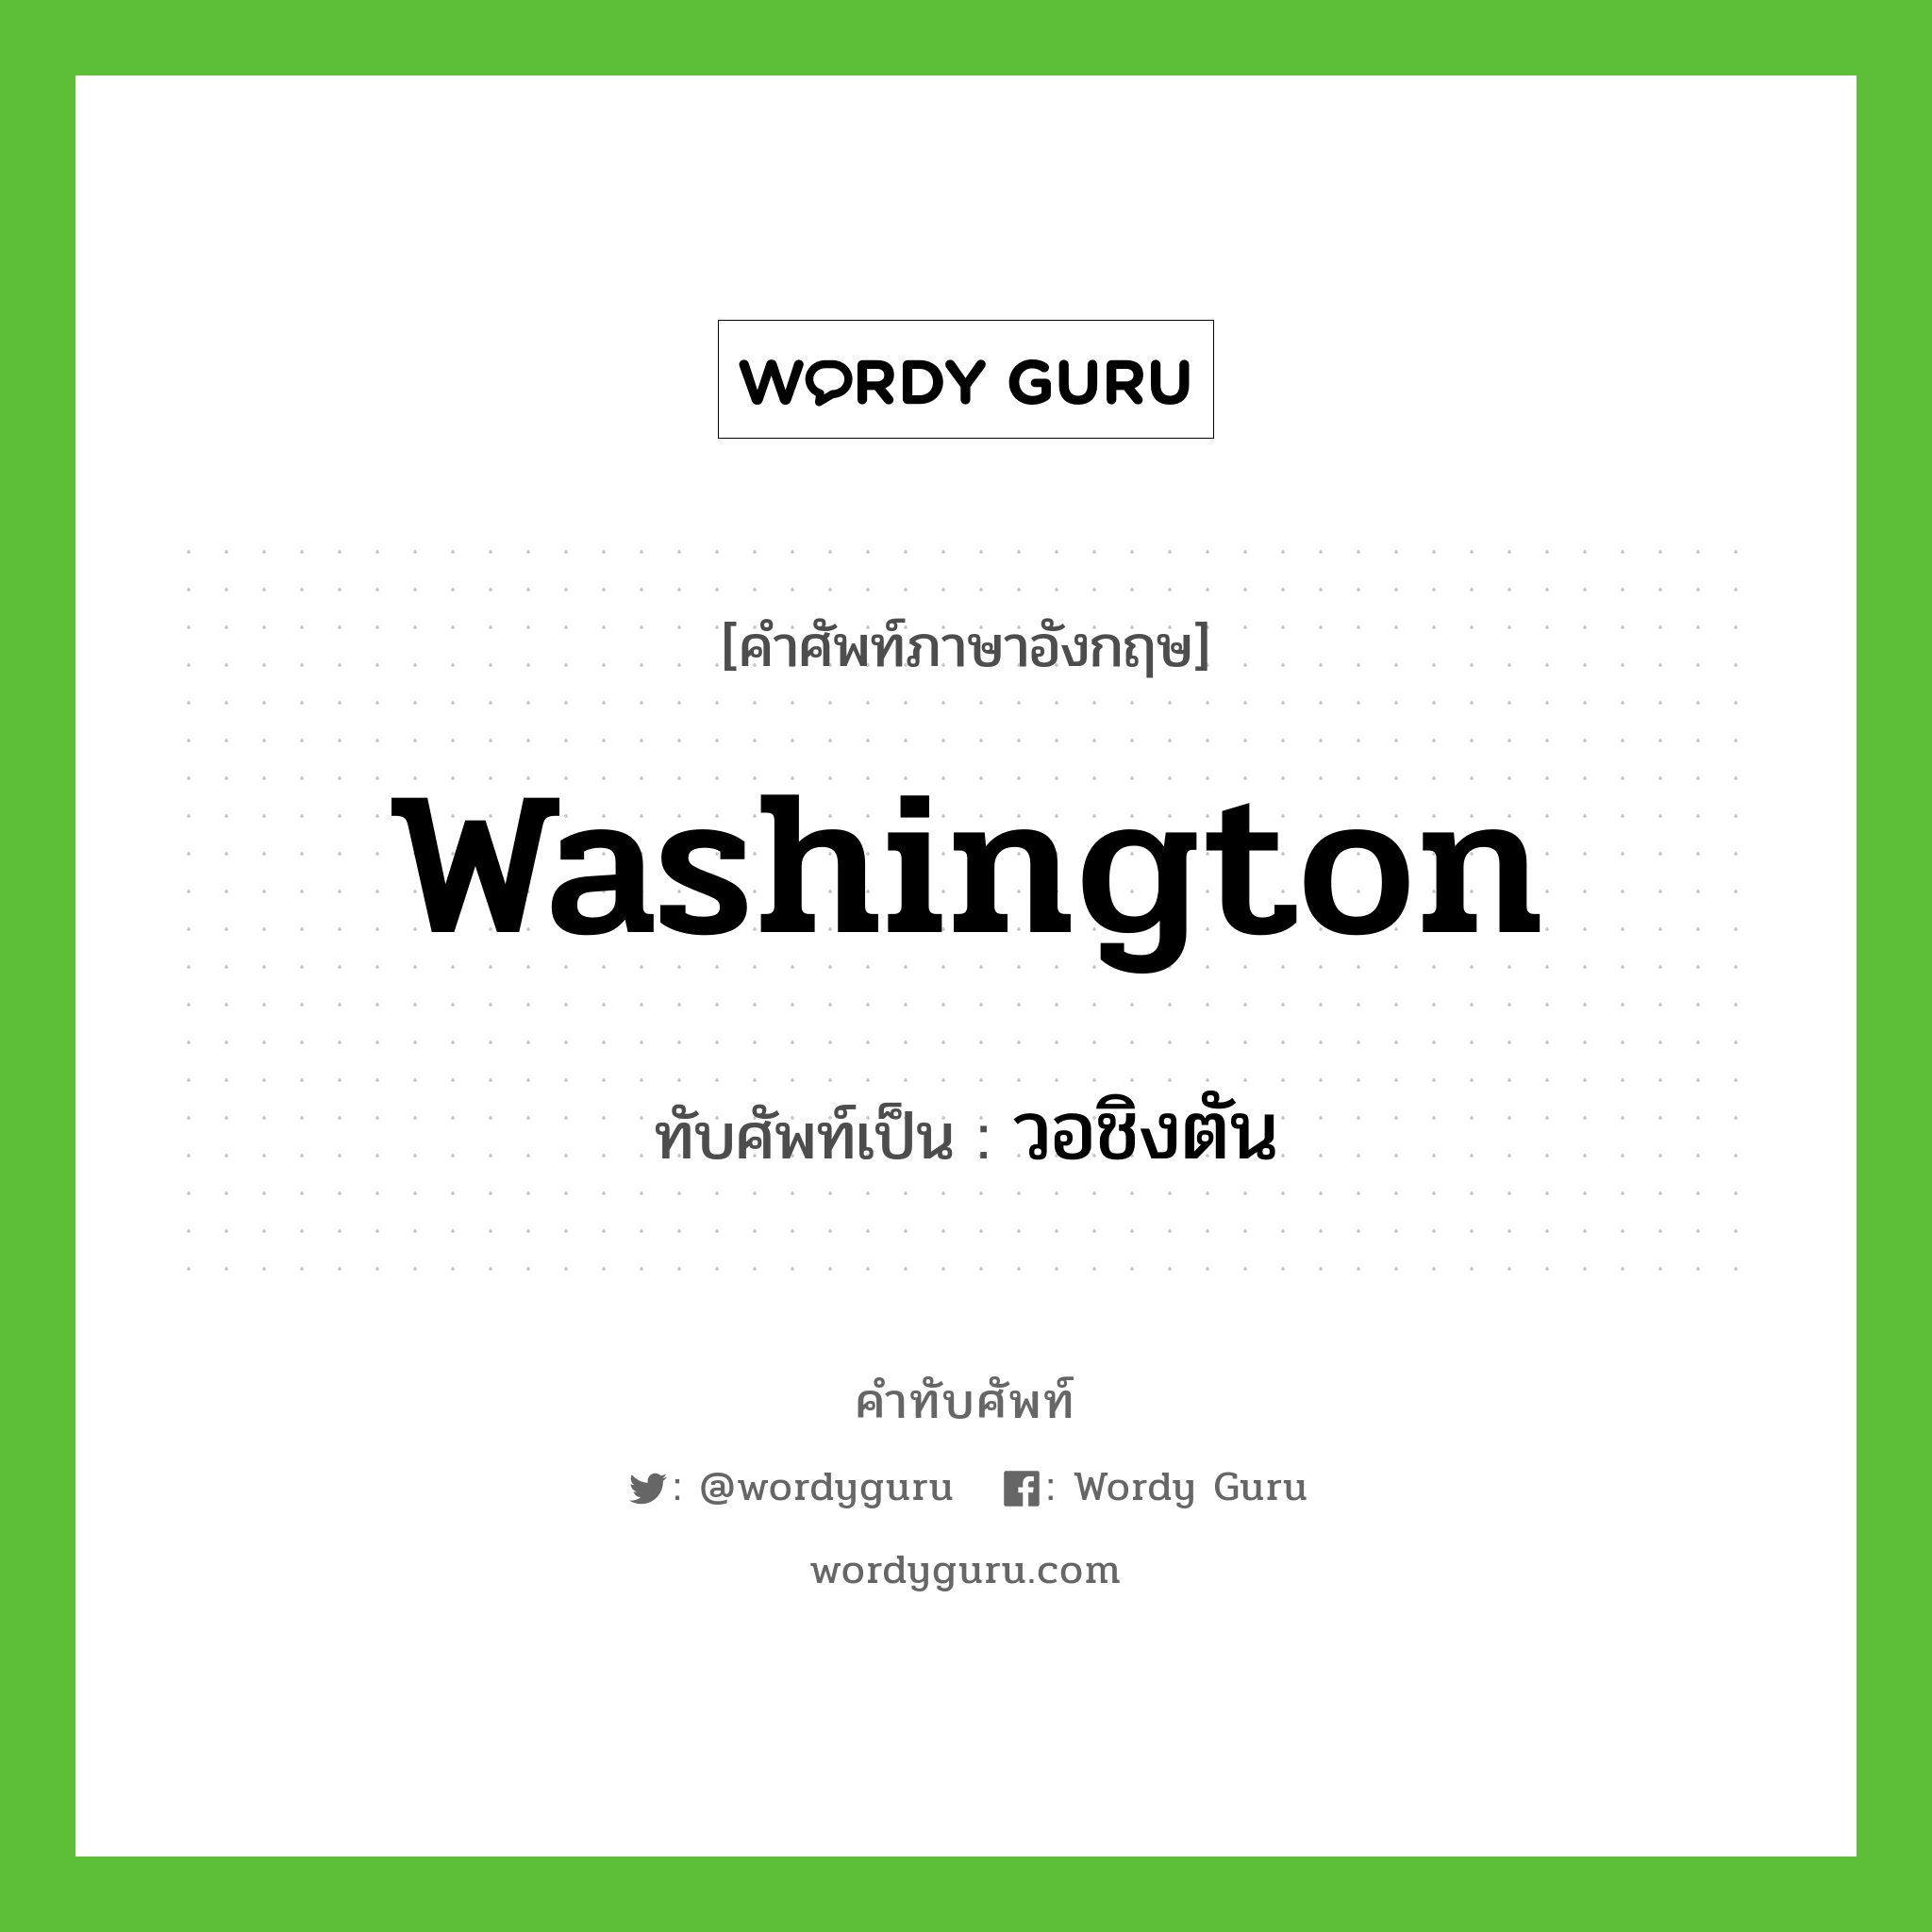 Washington เขียนเป็นคำไทยว่าอะไร?, คำศัพท์ภาษาอังกฤษ Washington ทับศัพท์เป็น วอชิงตัน